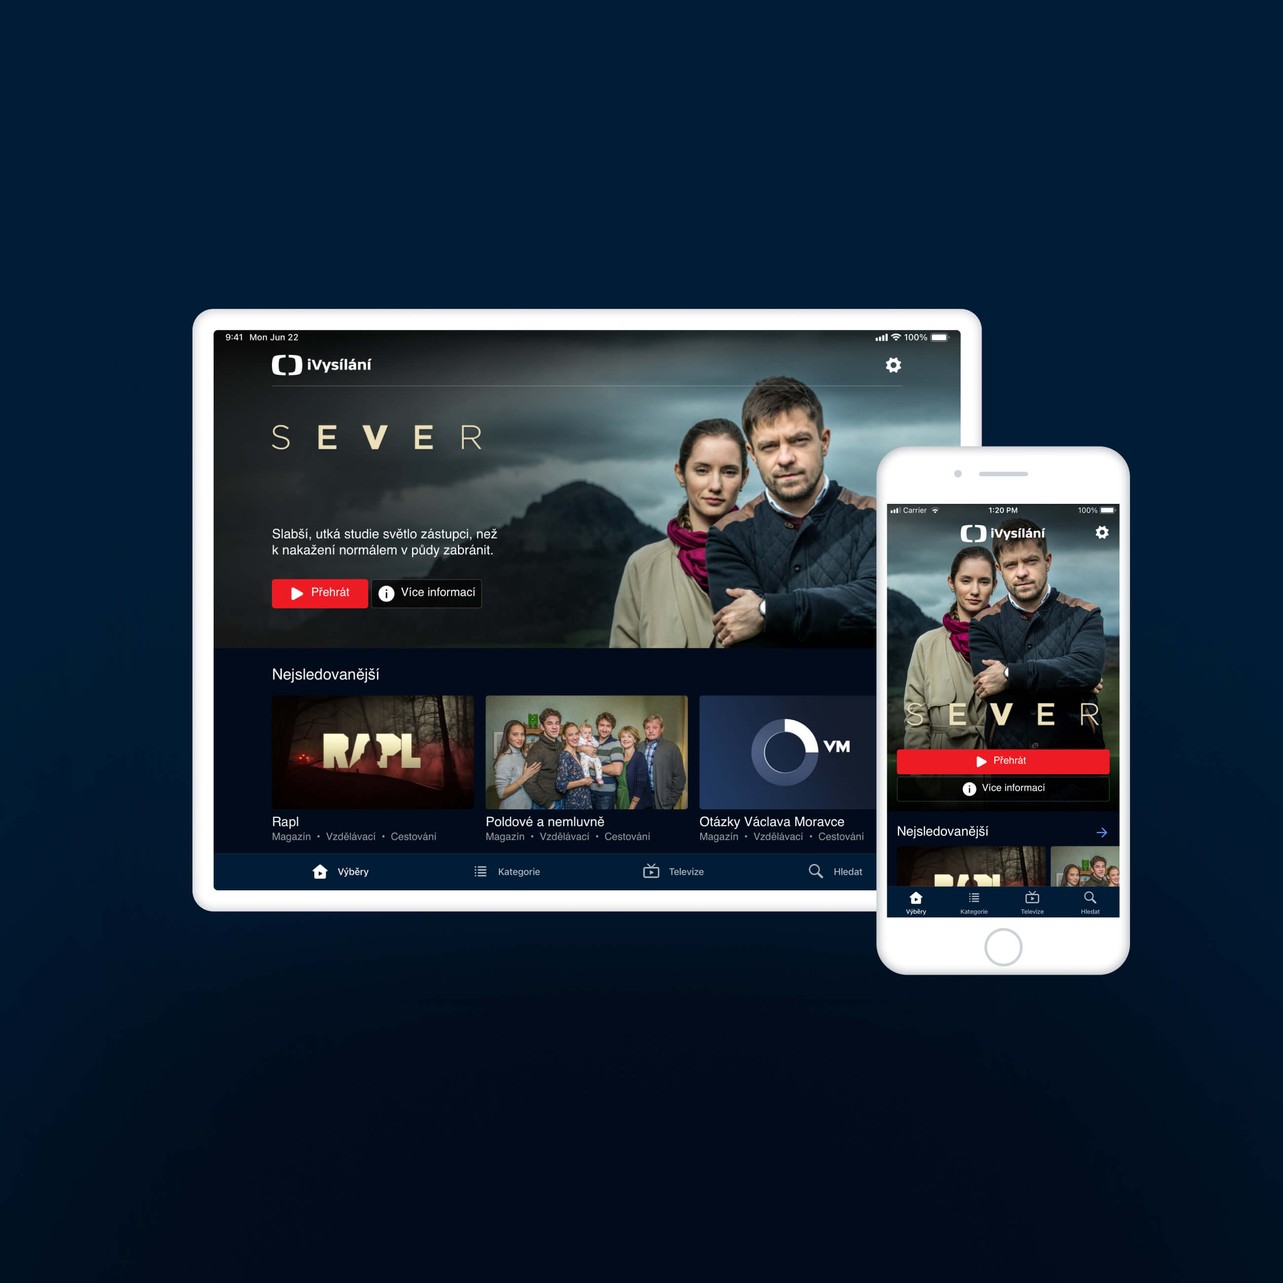 Czech TV streaming platform